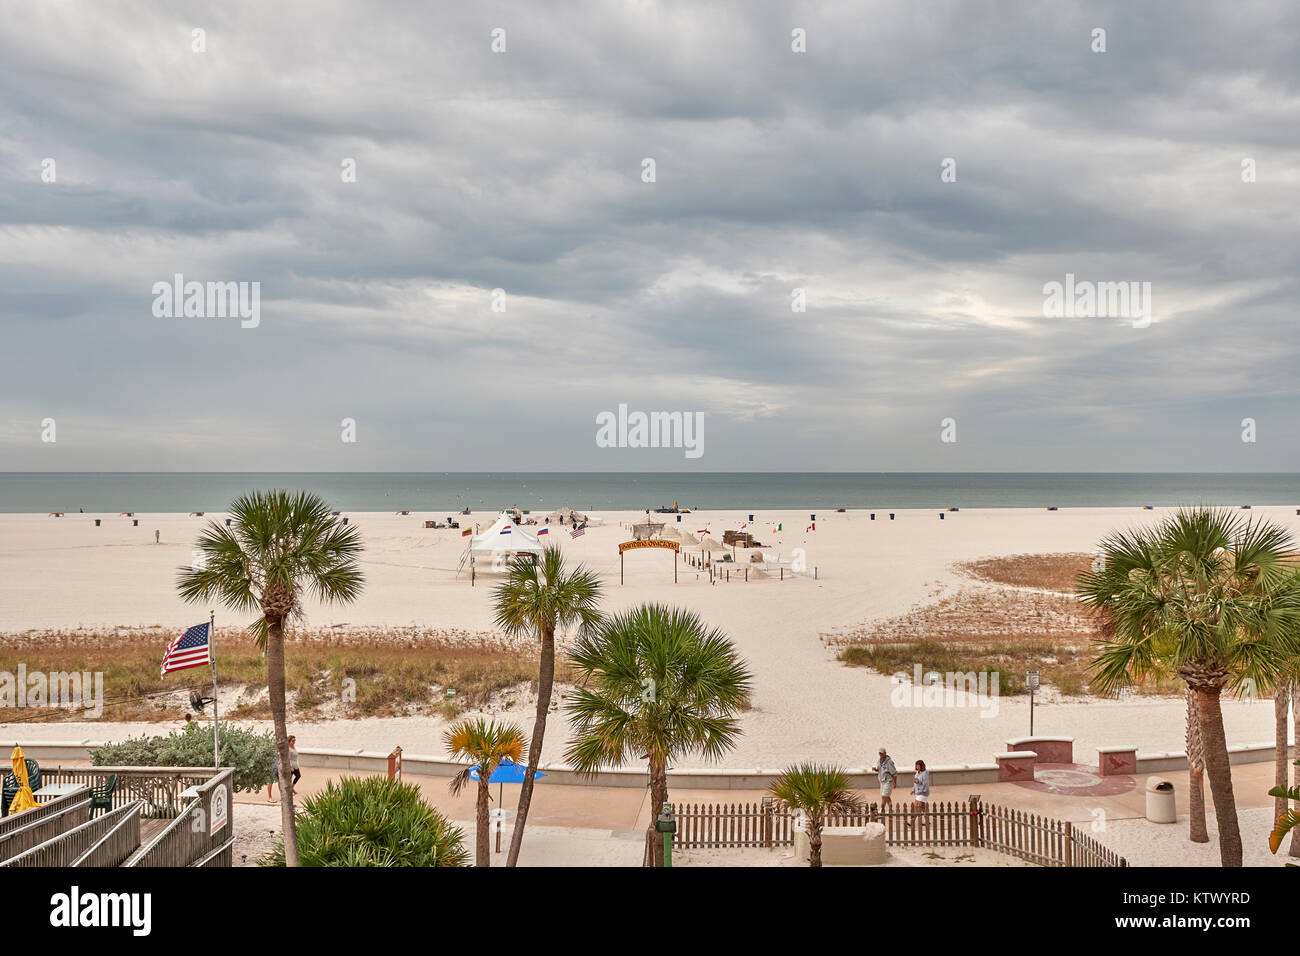 Die Florida Beach auf Treasure Island fertig, das Schleifen Ovationen Sandskulpturen Wettbewerb/Festival zu veranstalten, an einem bewölkten Tag, Florida USA. Stockfoto